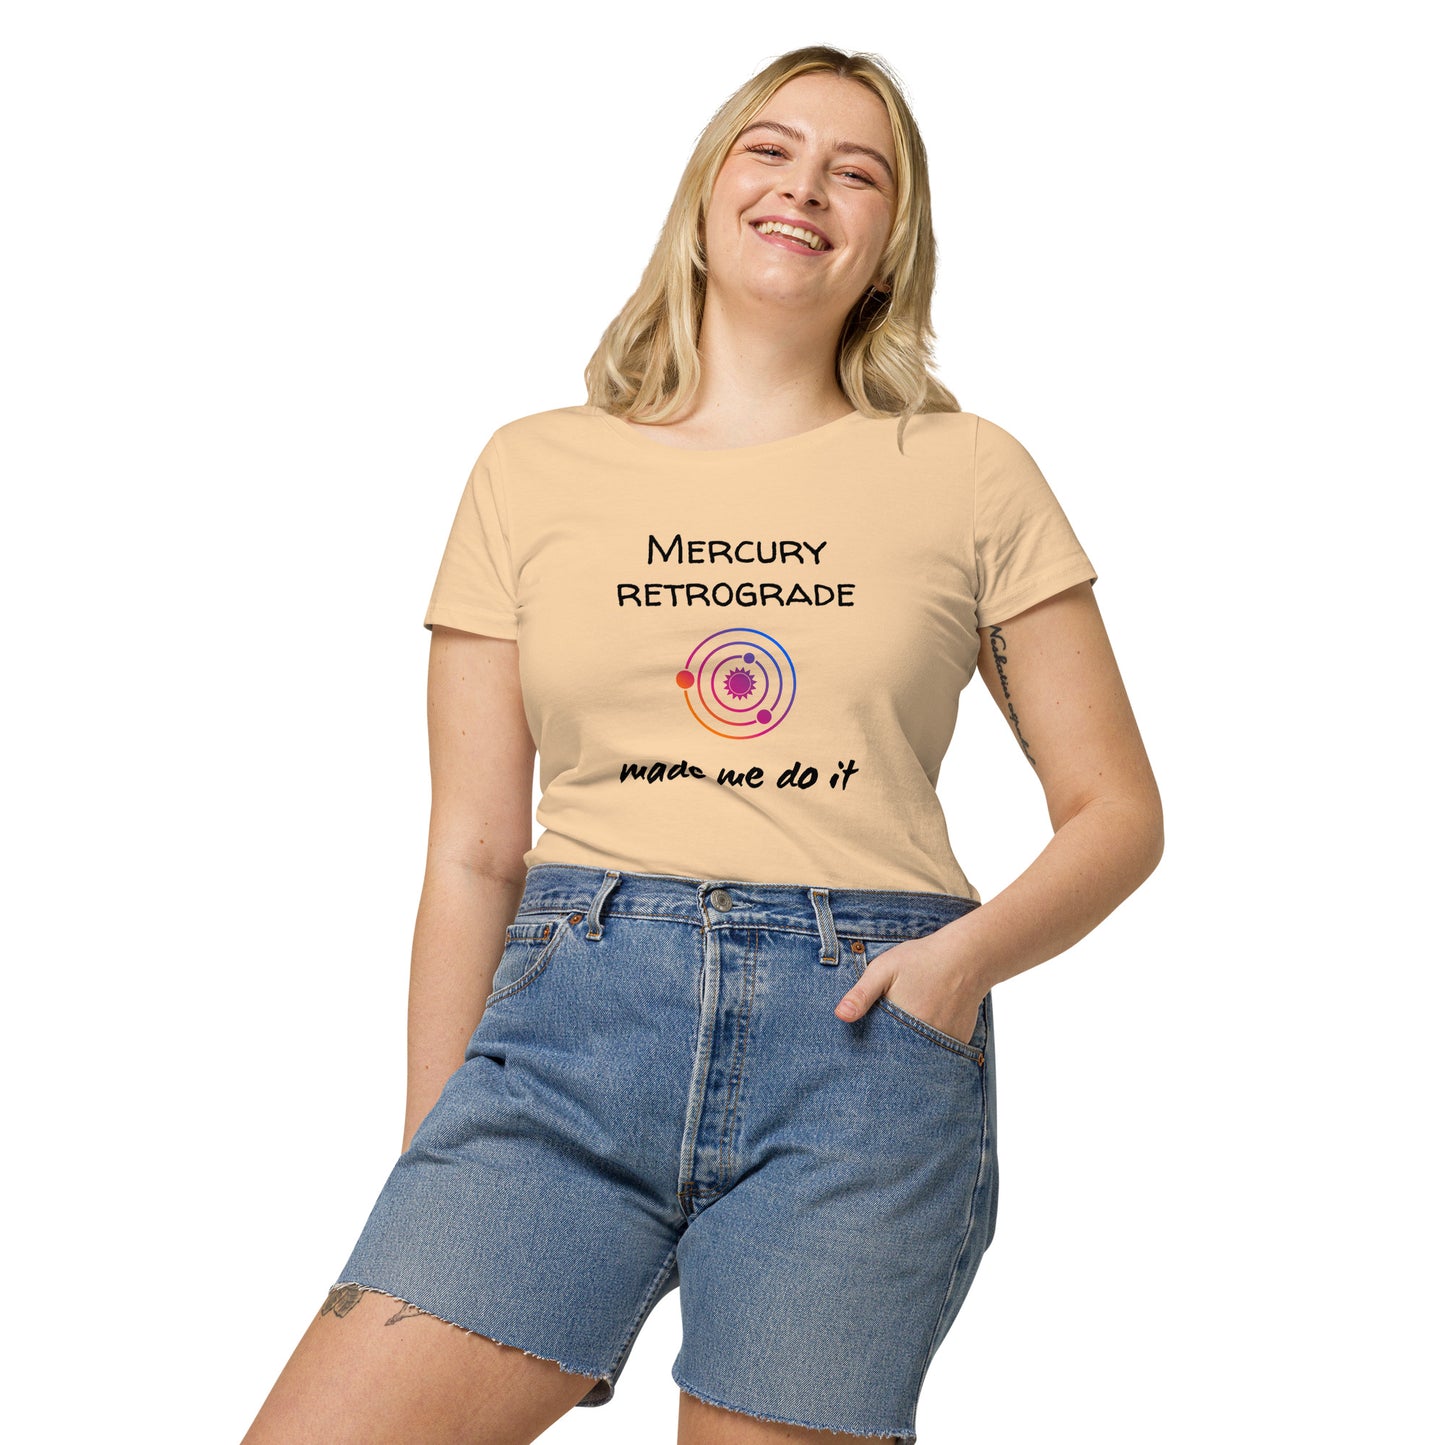 Mercury retrograde made me do it, t-shirt